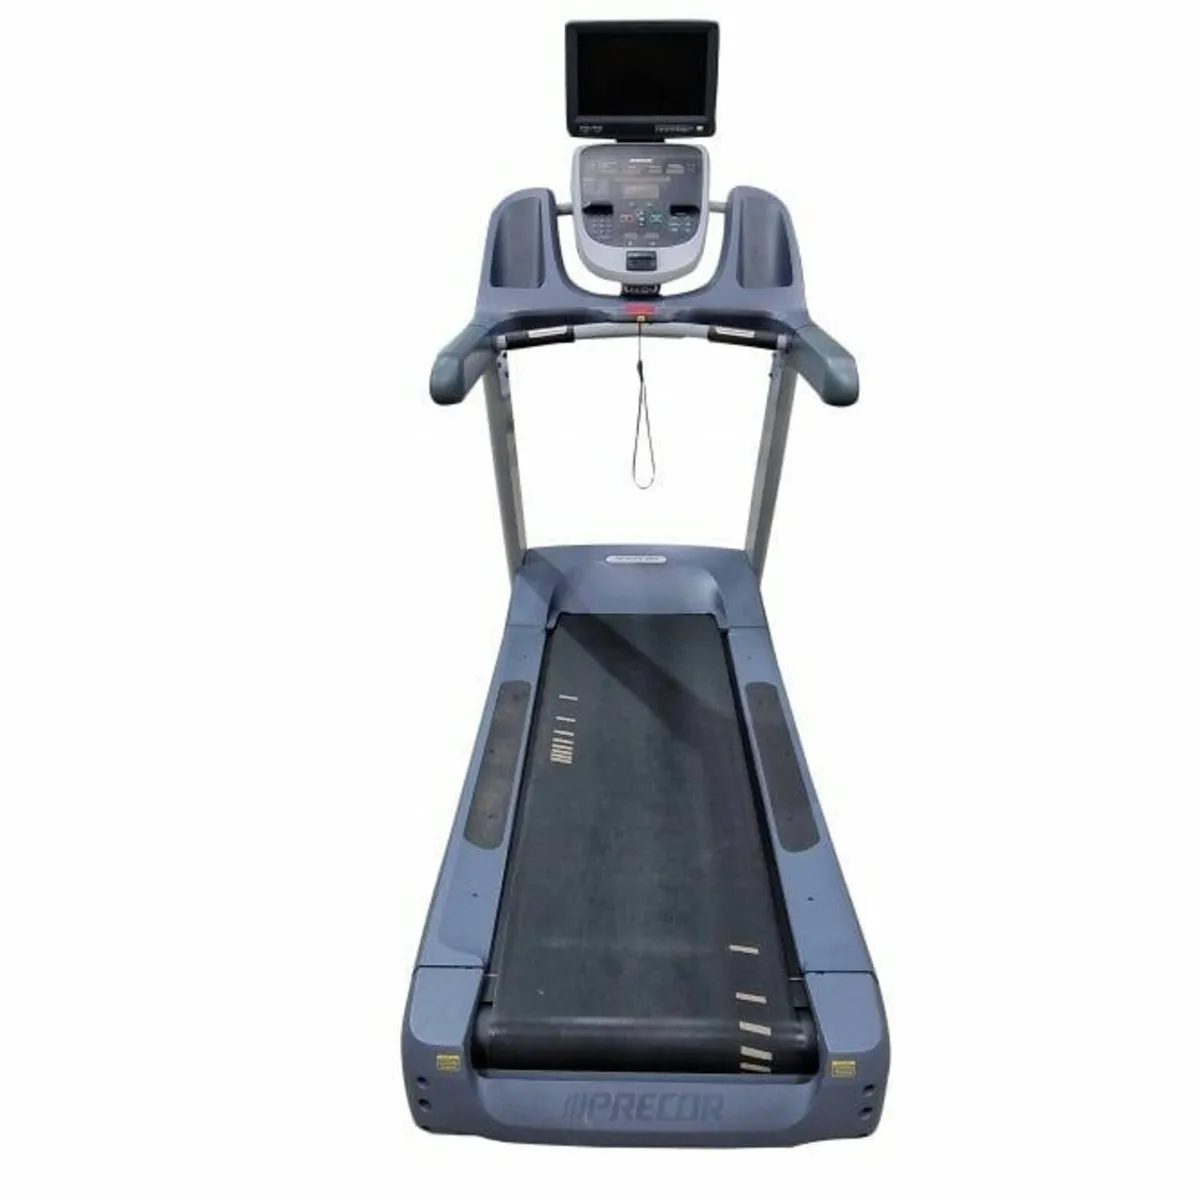 Precor TRM 833 treadmill - Image 1